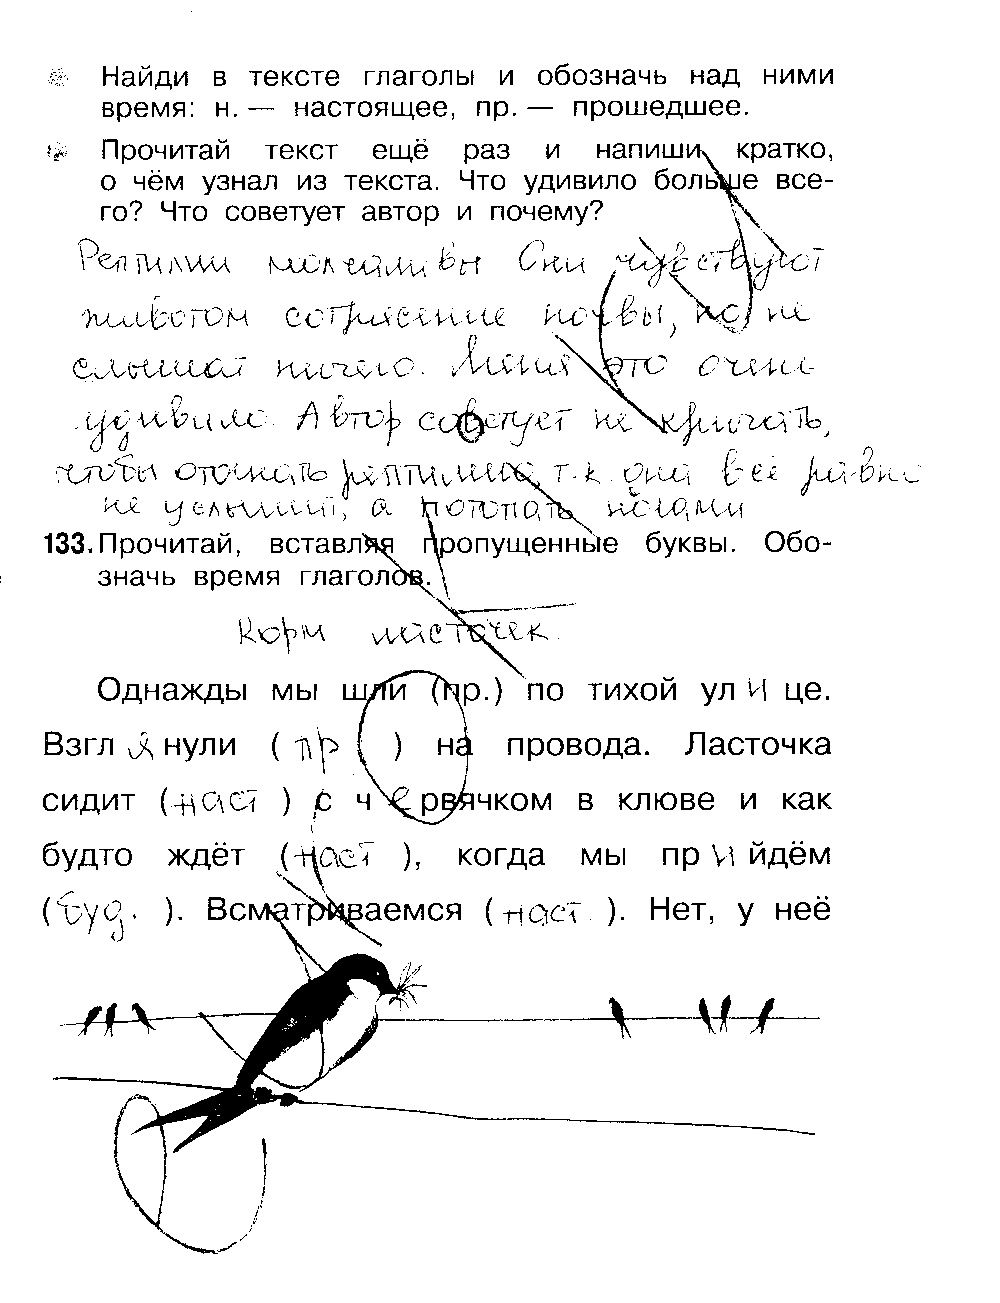 ГДЗ Русский язык 3 класс - стр. 49